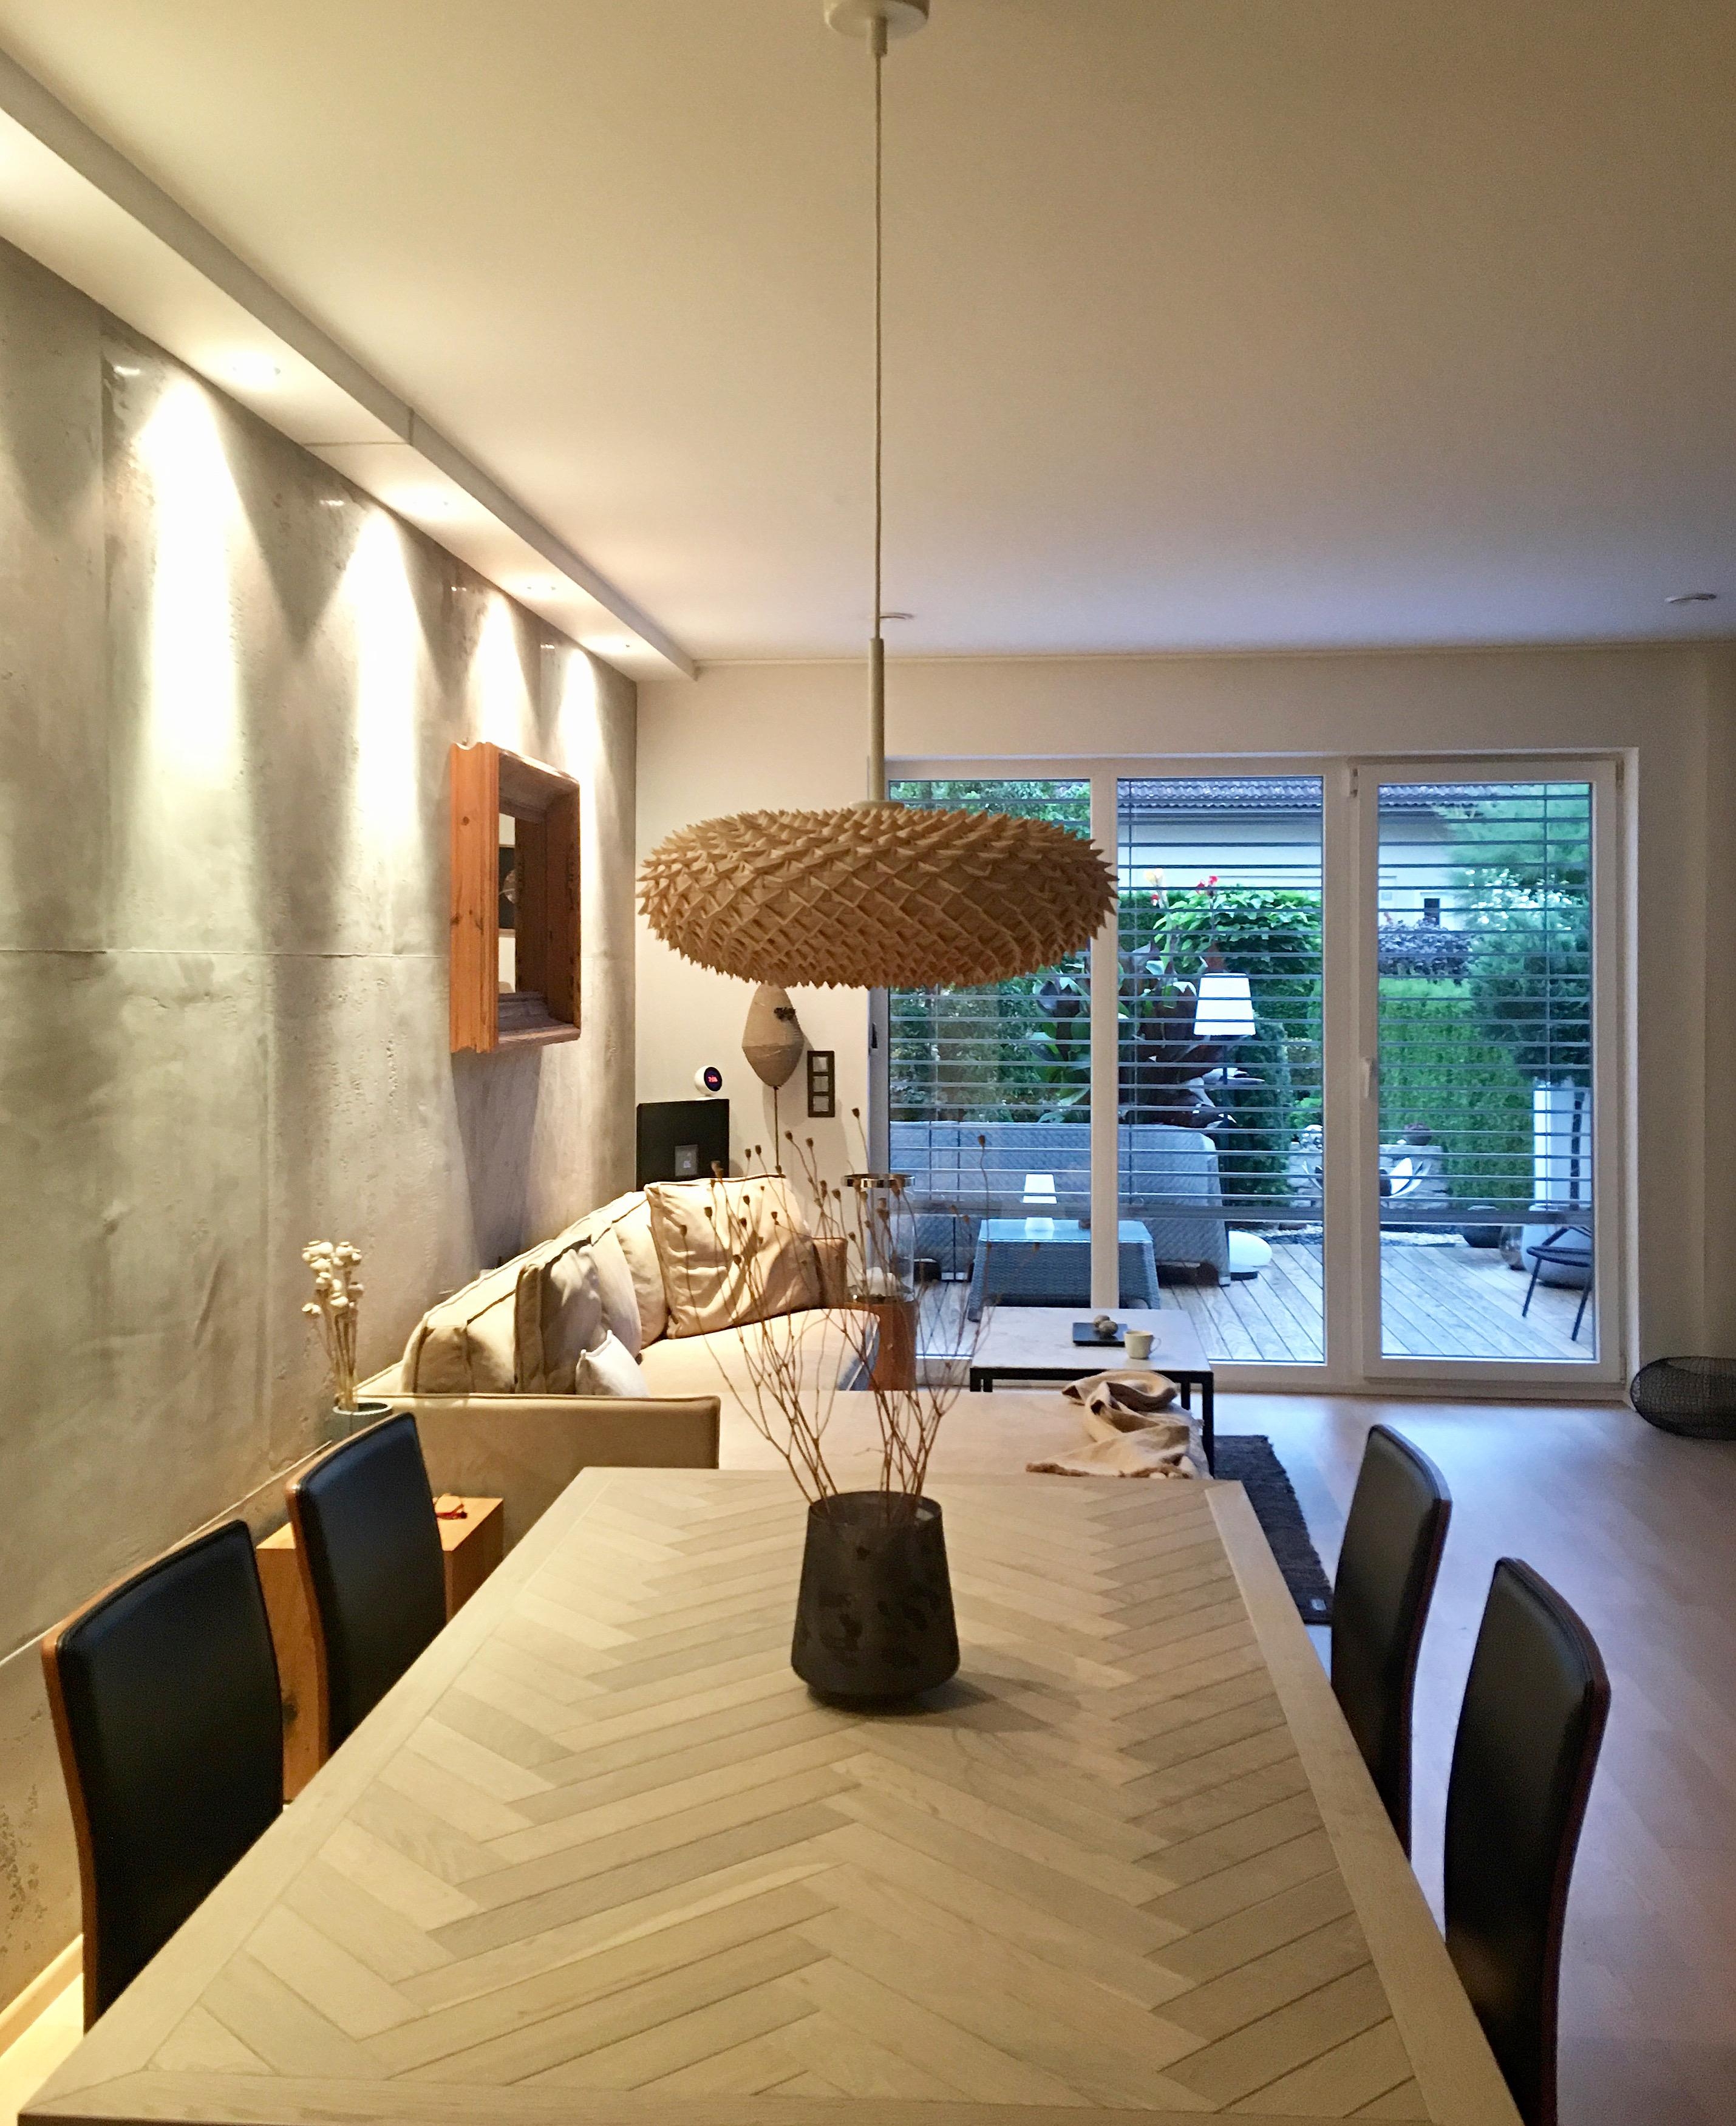 Livingroom
interiordesign #interior #interiorismo #interior_delux #wohnzimmer #livingroom#stucco #stuccoveneziano #smar